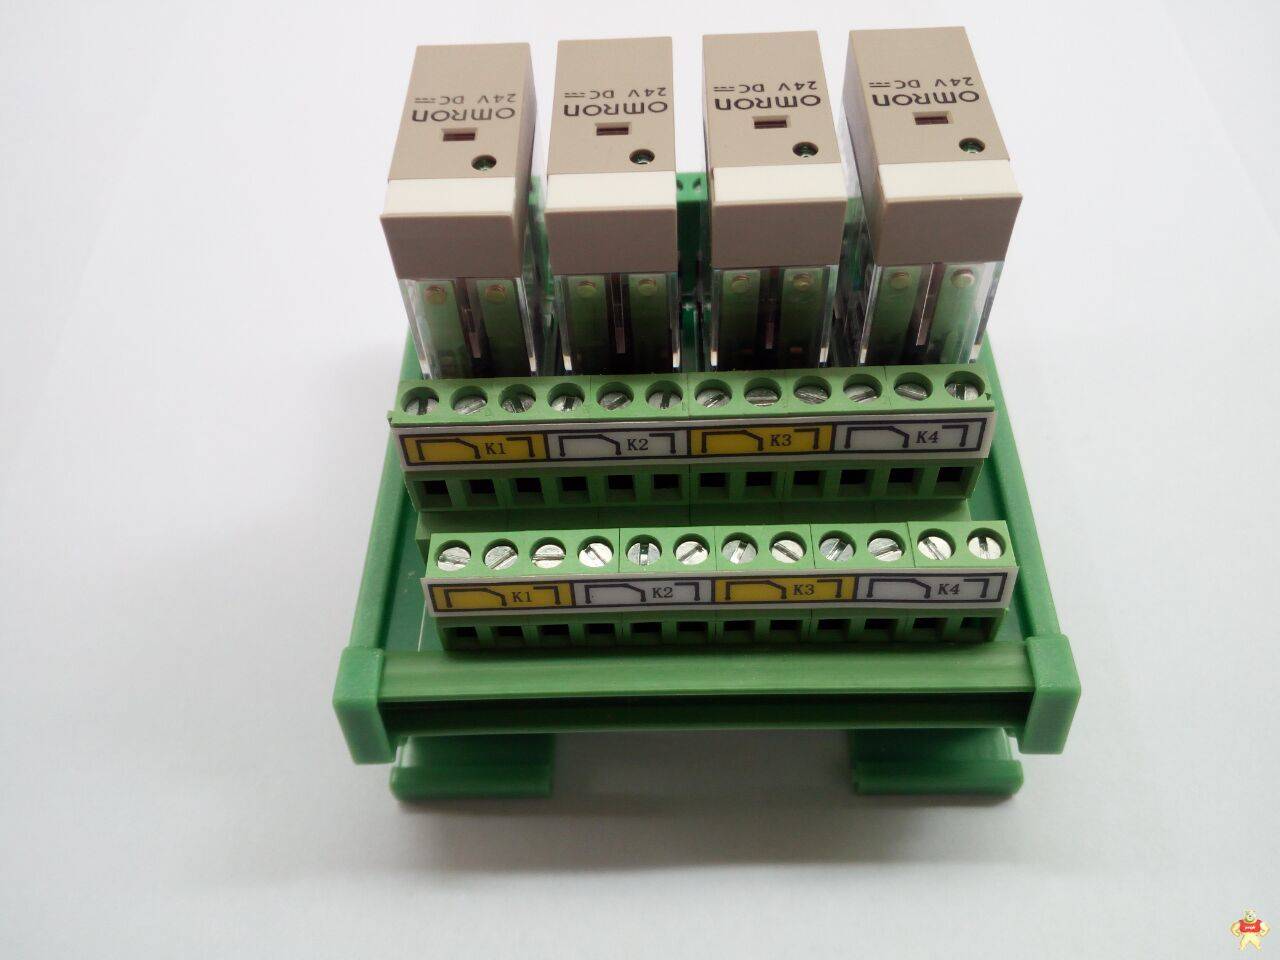 TL10A-4RR-3二开二闭OMRON继电器模组 PLC放大板 CE认证 PLC放大板,PLC驱动板,继电器模组,继电器板